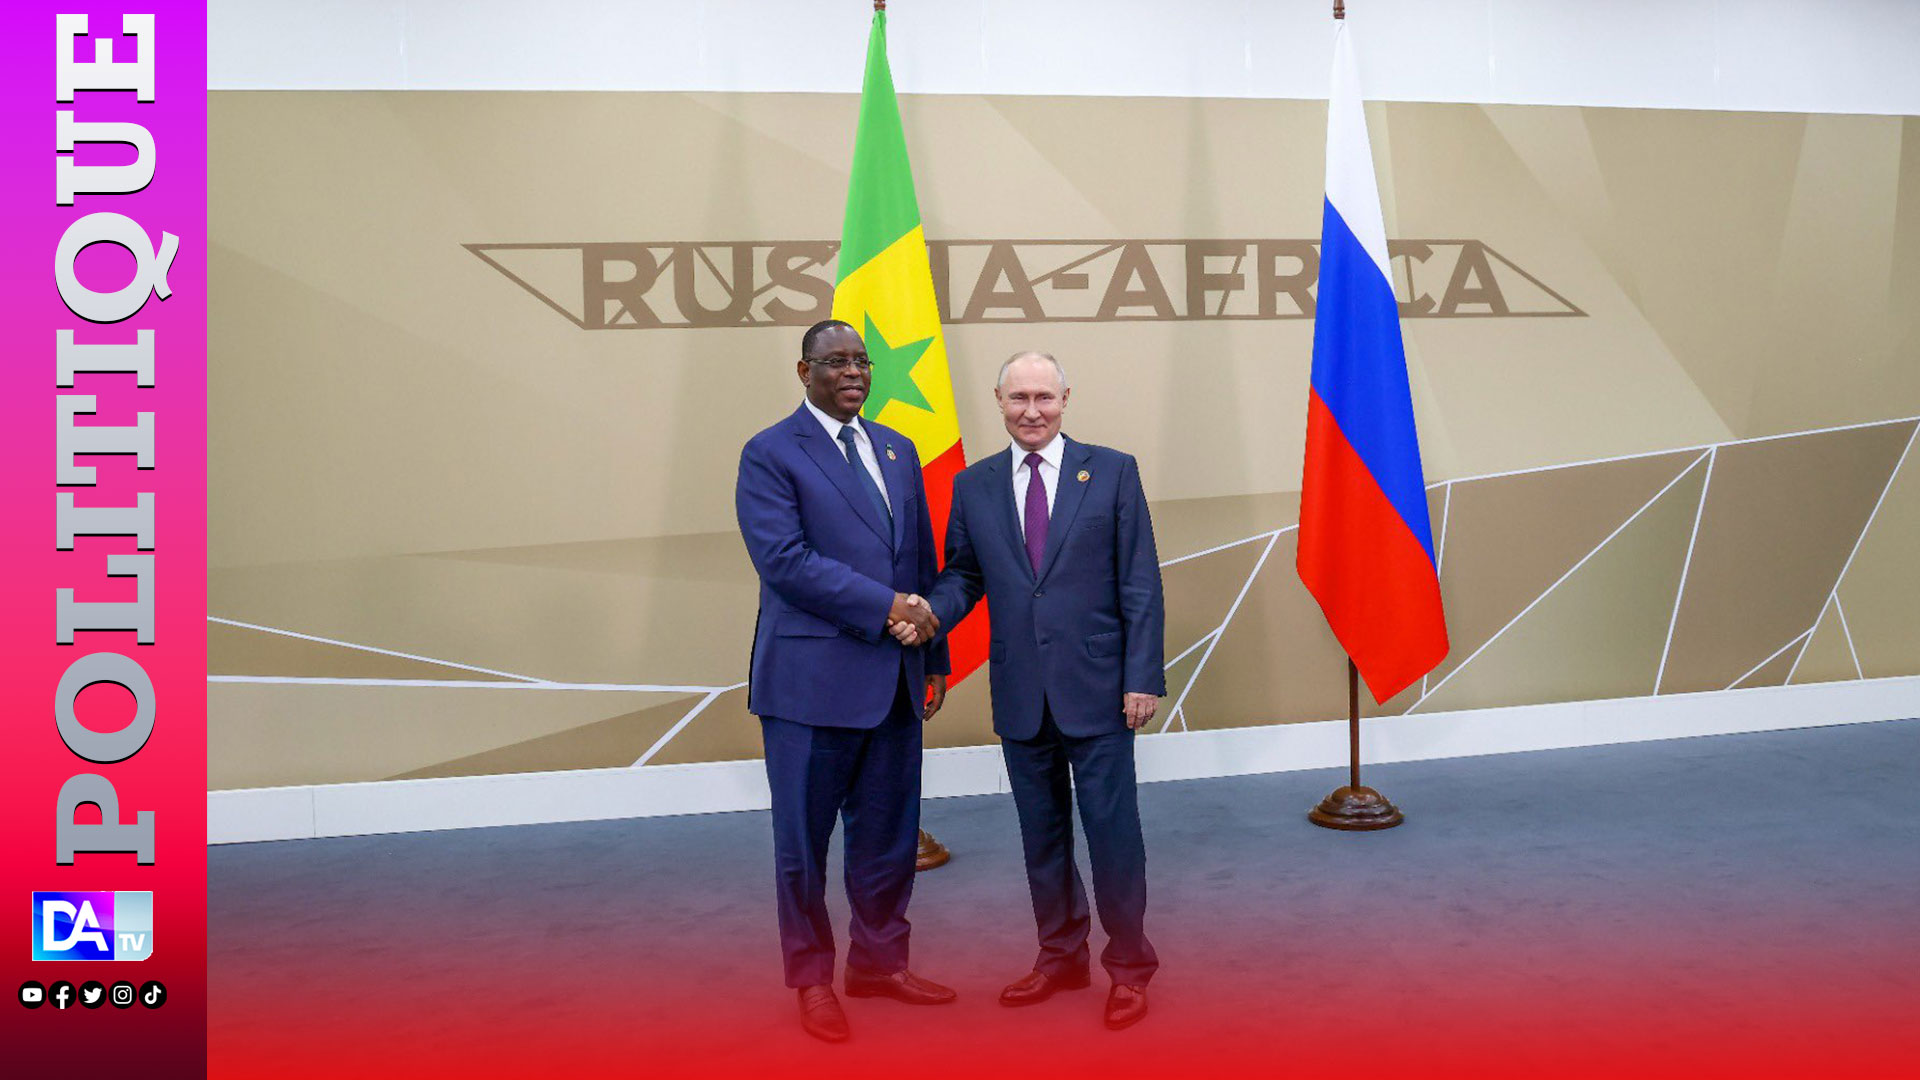 Coopération Senegalo-Russe : Le président Macky Sall a eu un entretien avec Vladimir Poutine